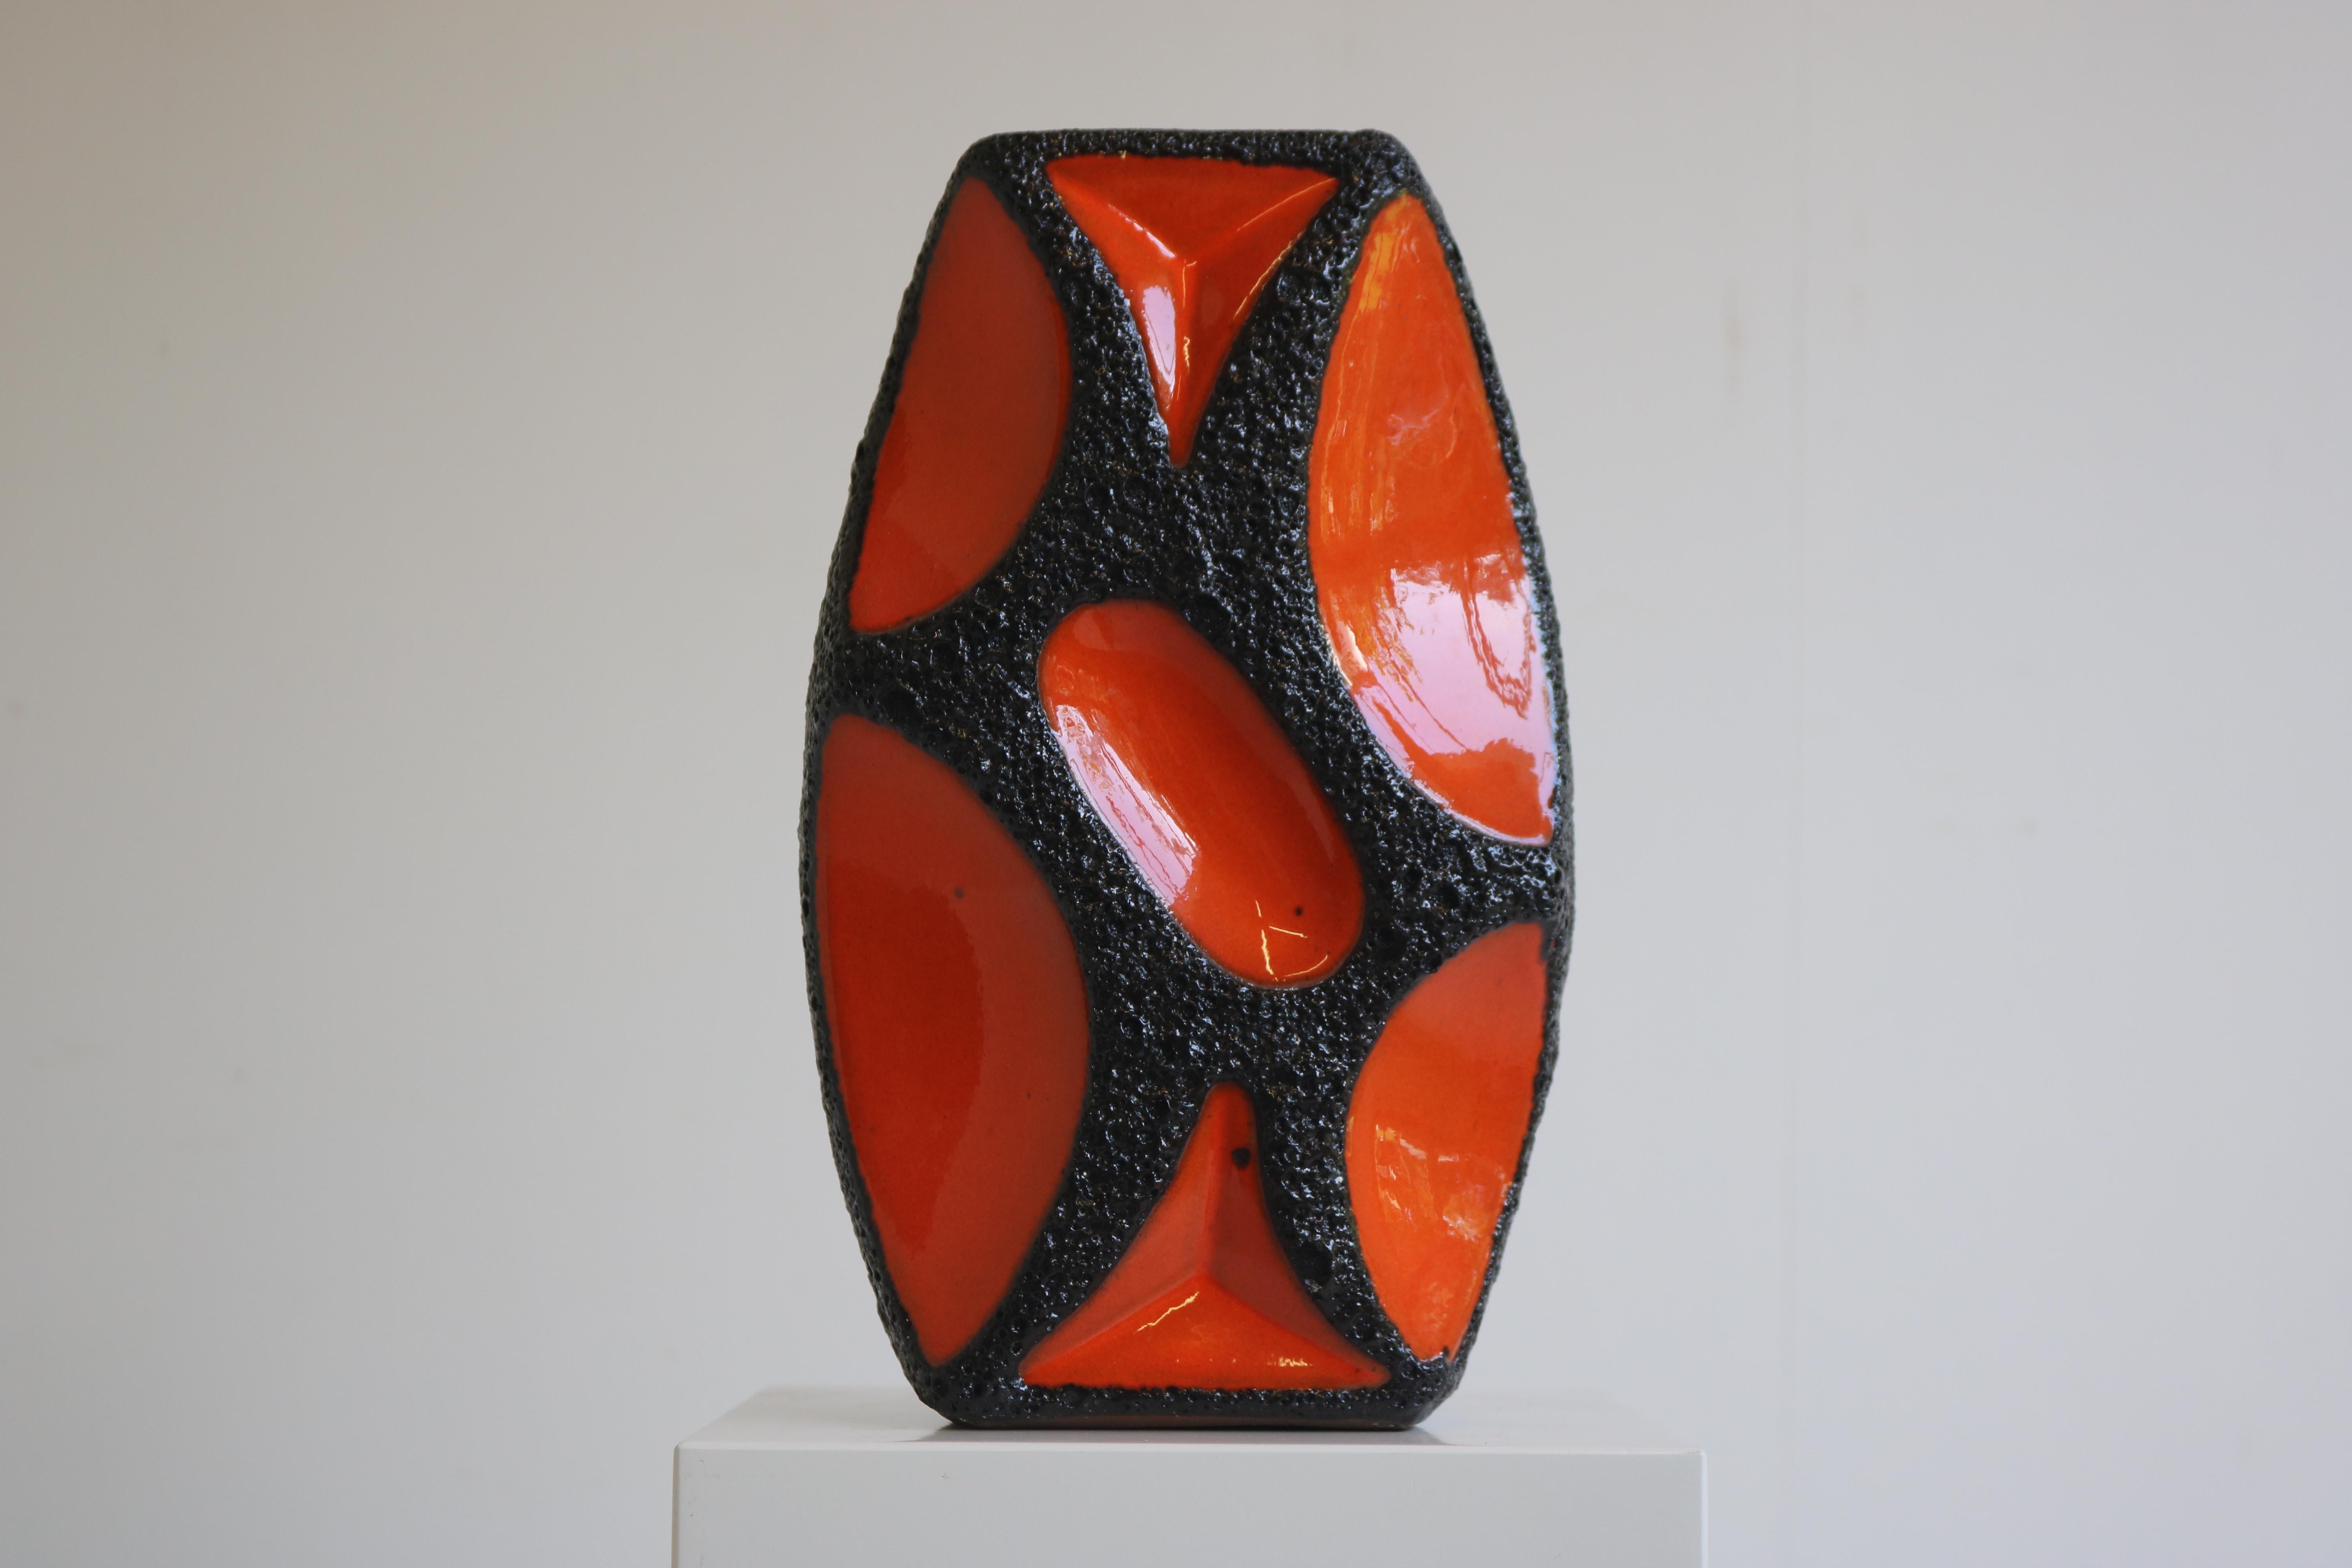 Sie suchen nach einem besonderen Stück, das Ihren einzigartigen Stil unterstreicht? Diese fabelhafte orangefarbene Fat Lava Vase von Roth Keramik aus dem Jahr 1970 ist ein echter Hingucker!
Diese Vase ist aus hochwertiger Keramik gefertigt und wird